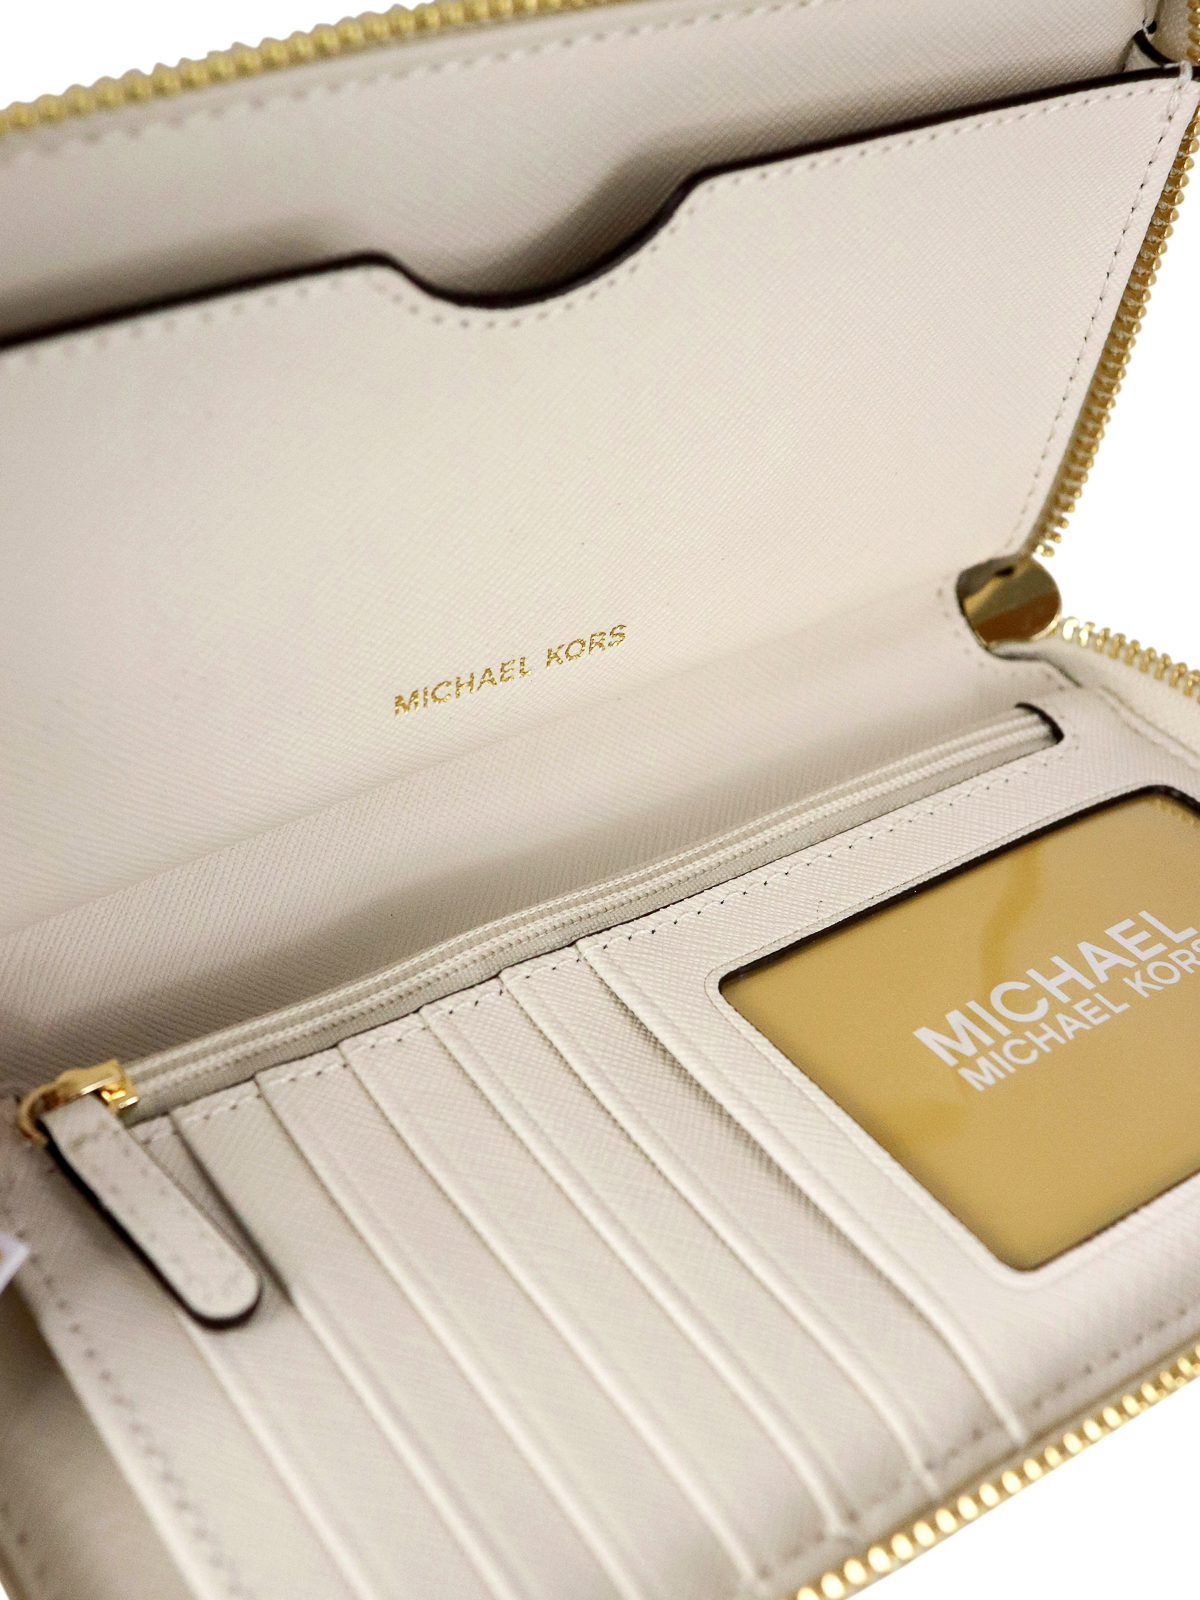 Michael Kors - MK wristlet wallet 